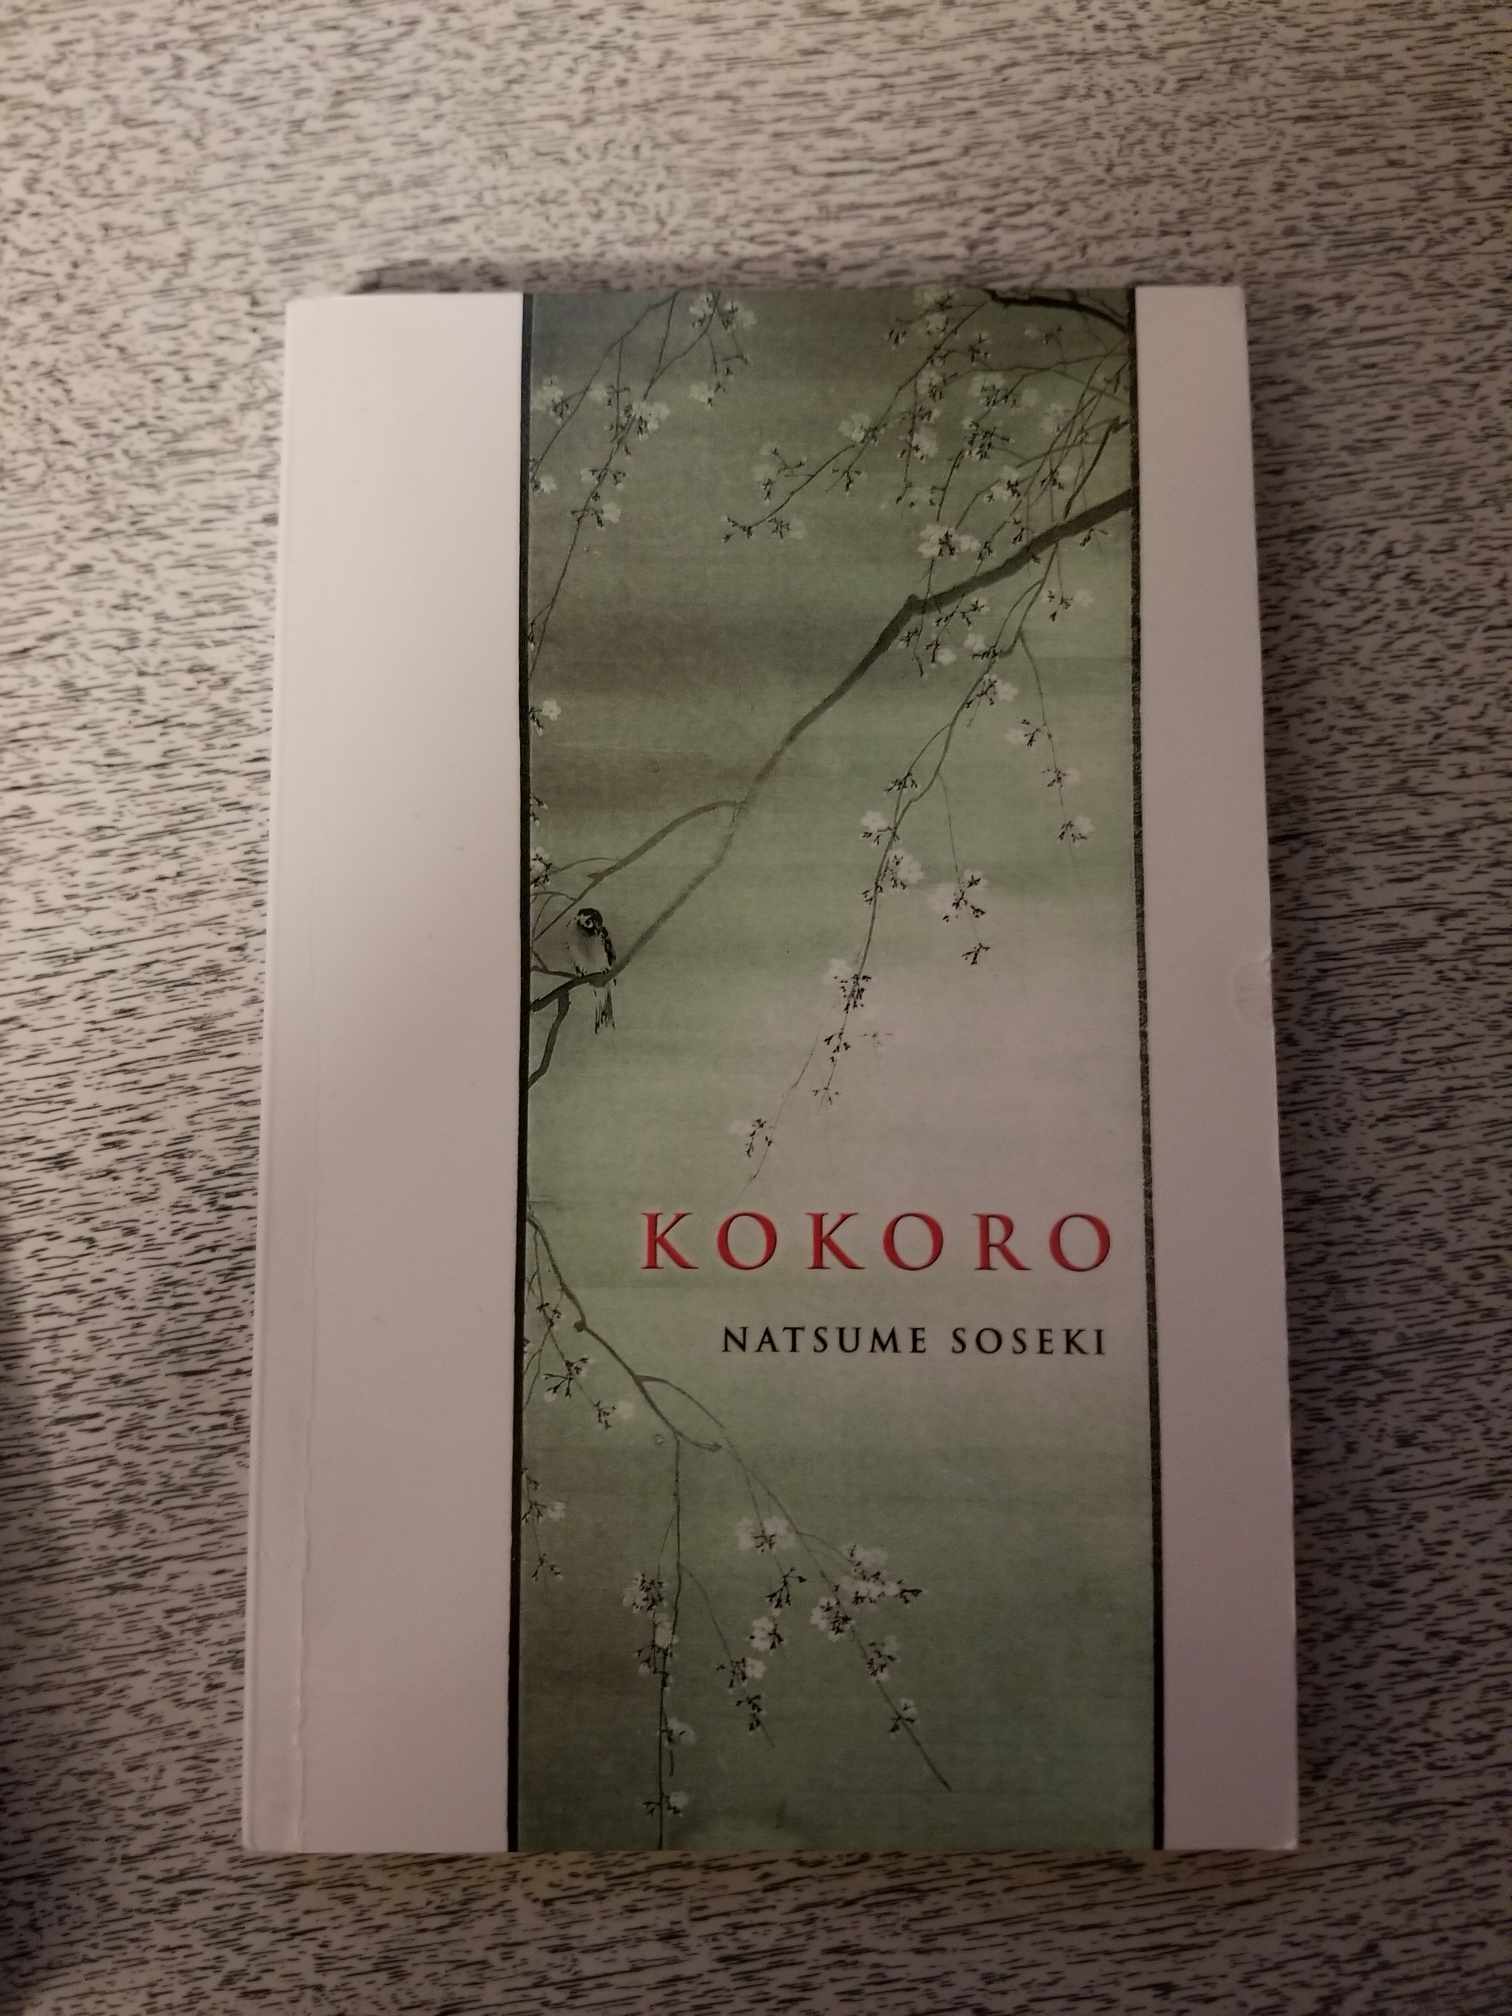 Kokoro by Natsume Soseki